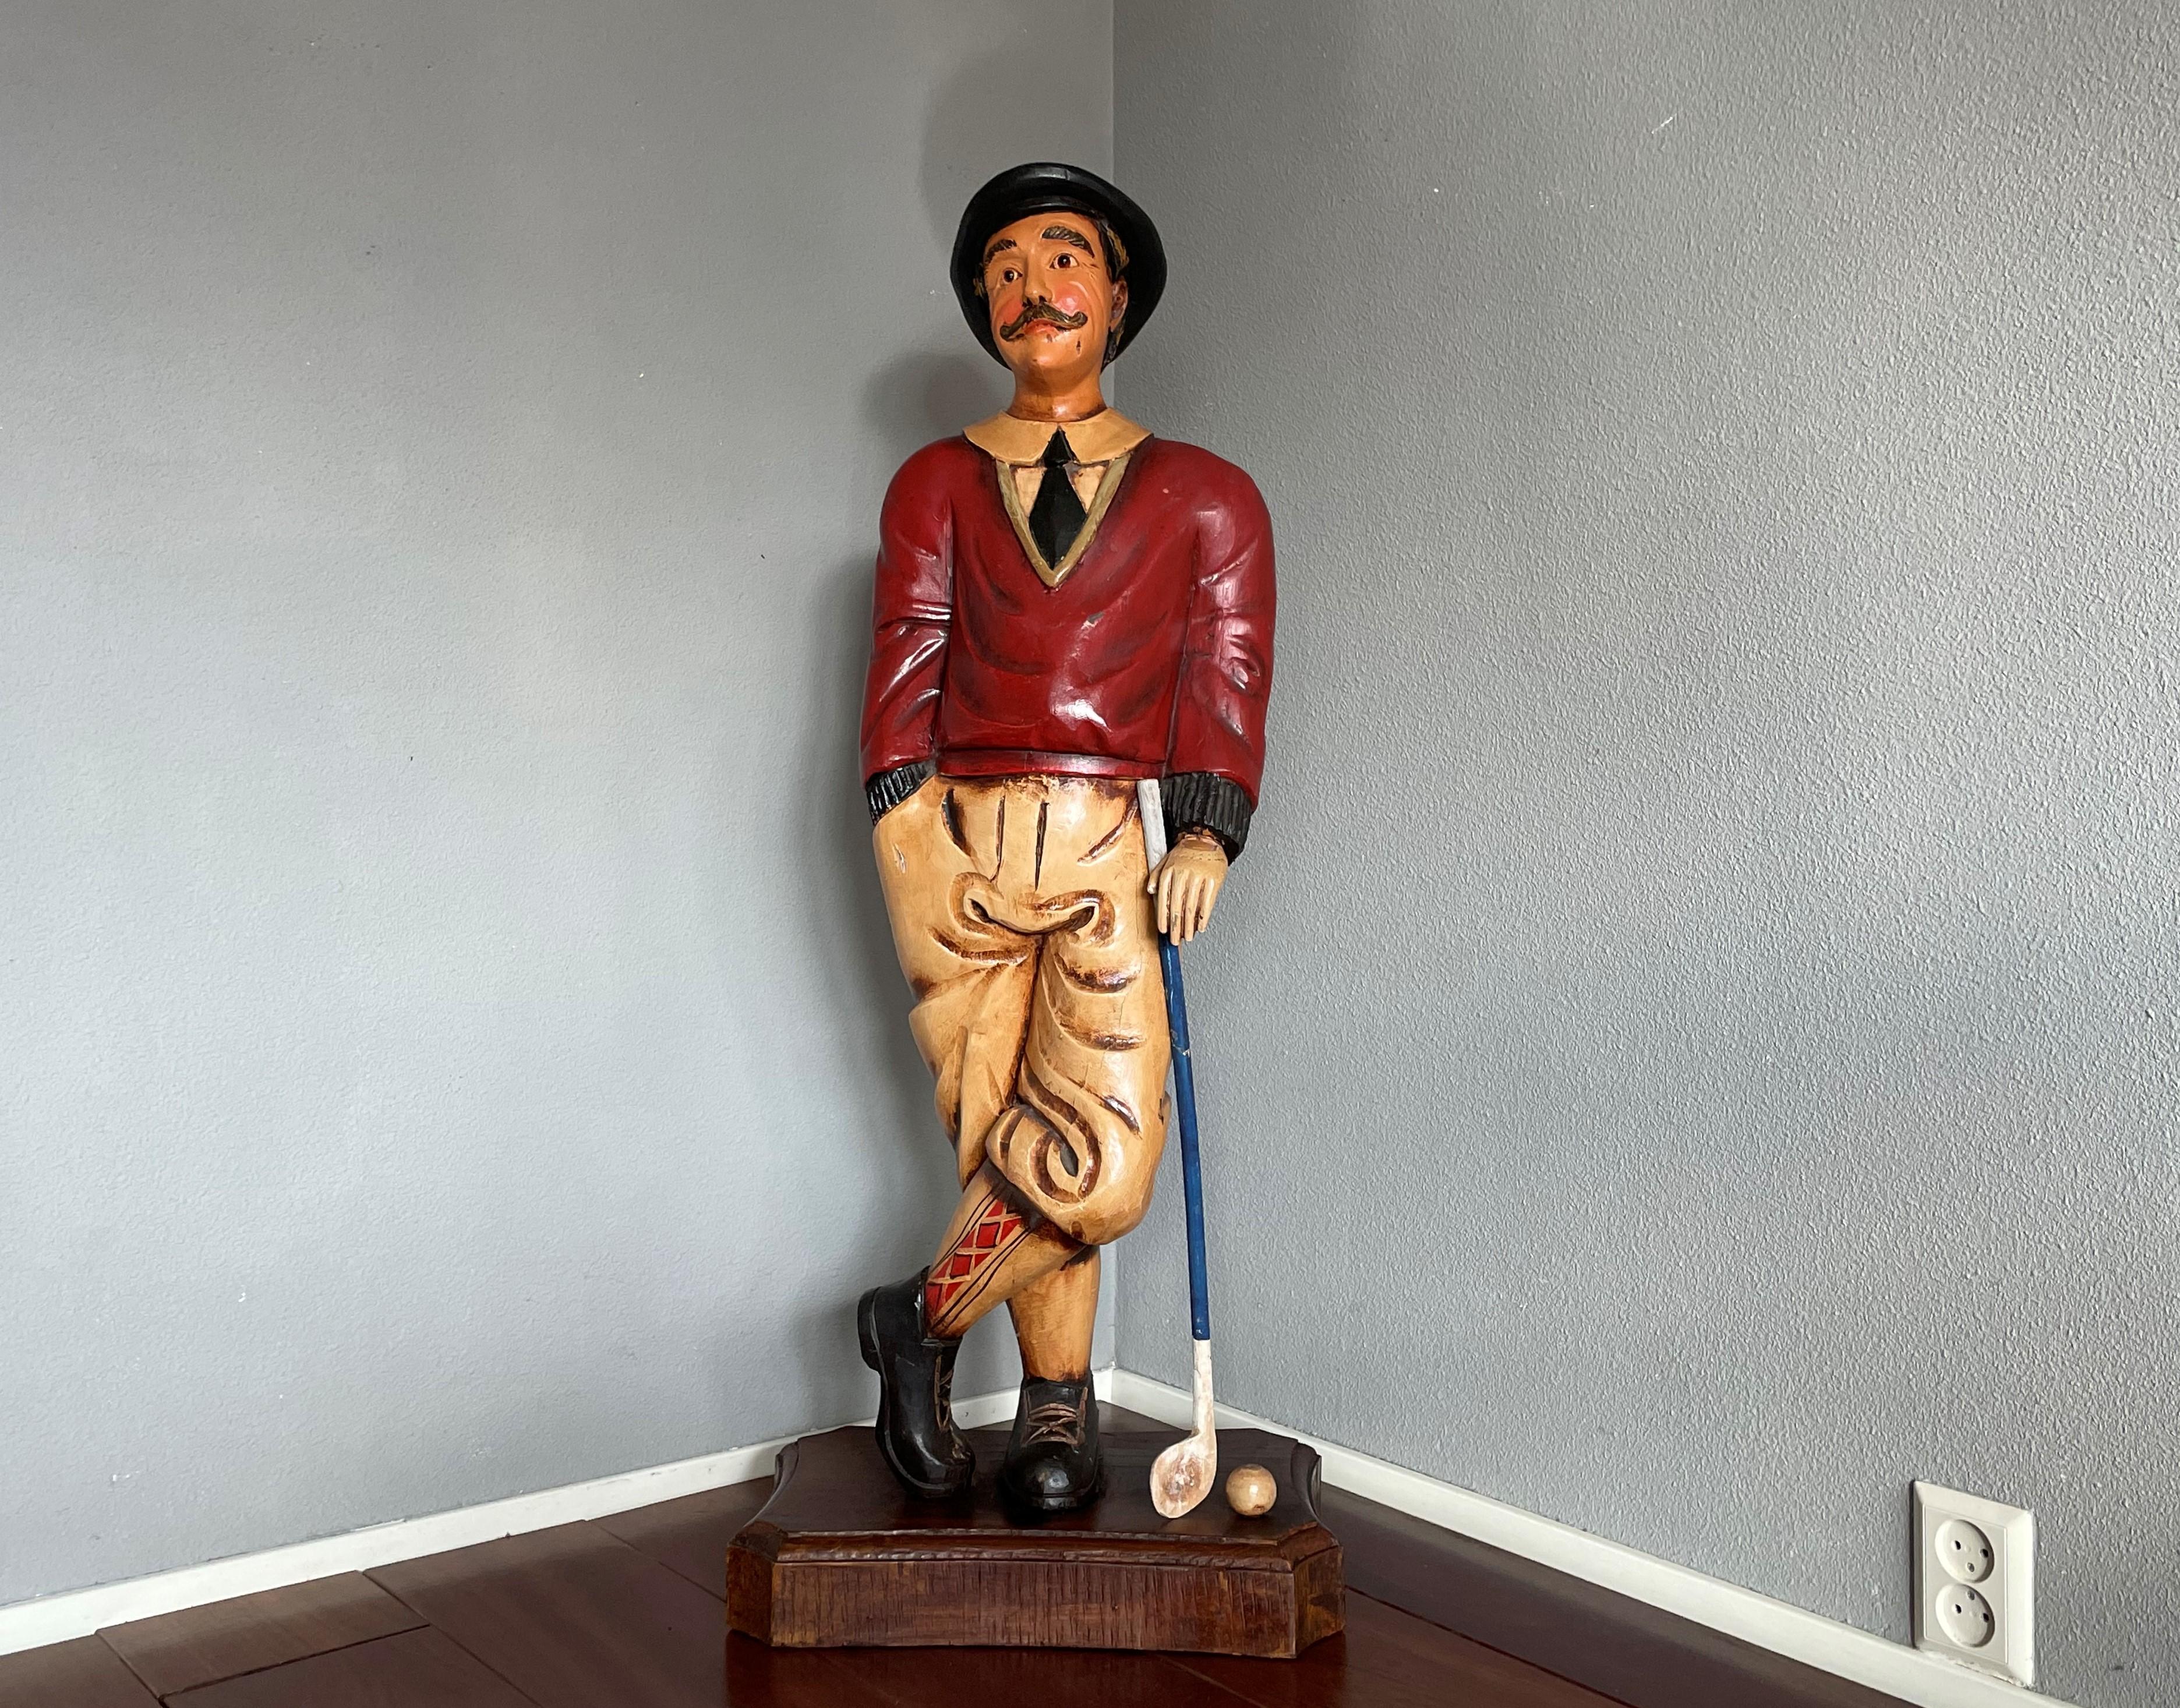 wooden golfer statue